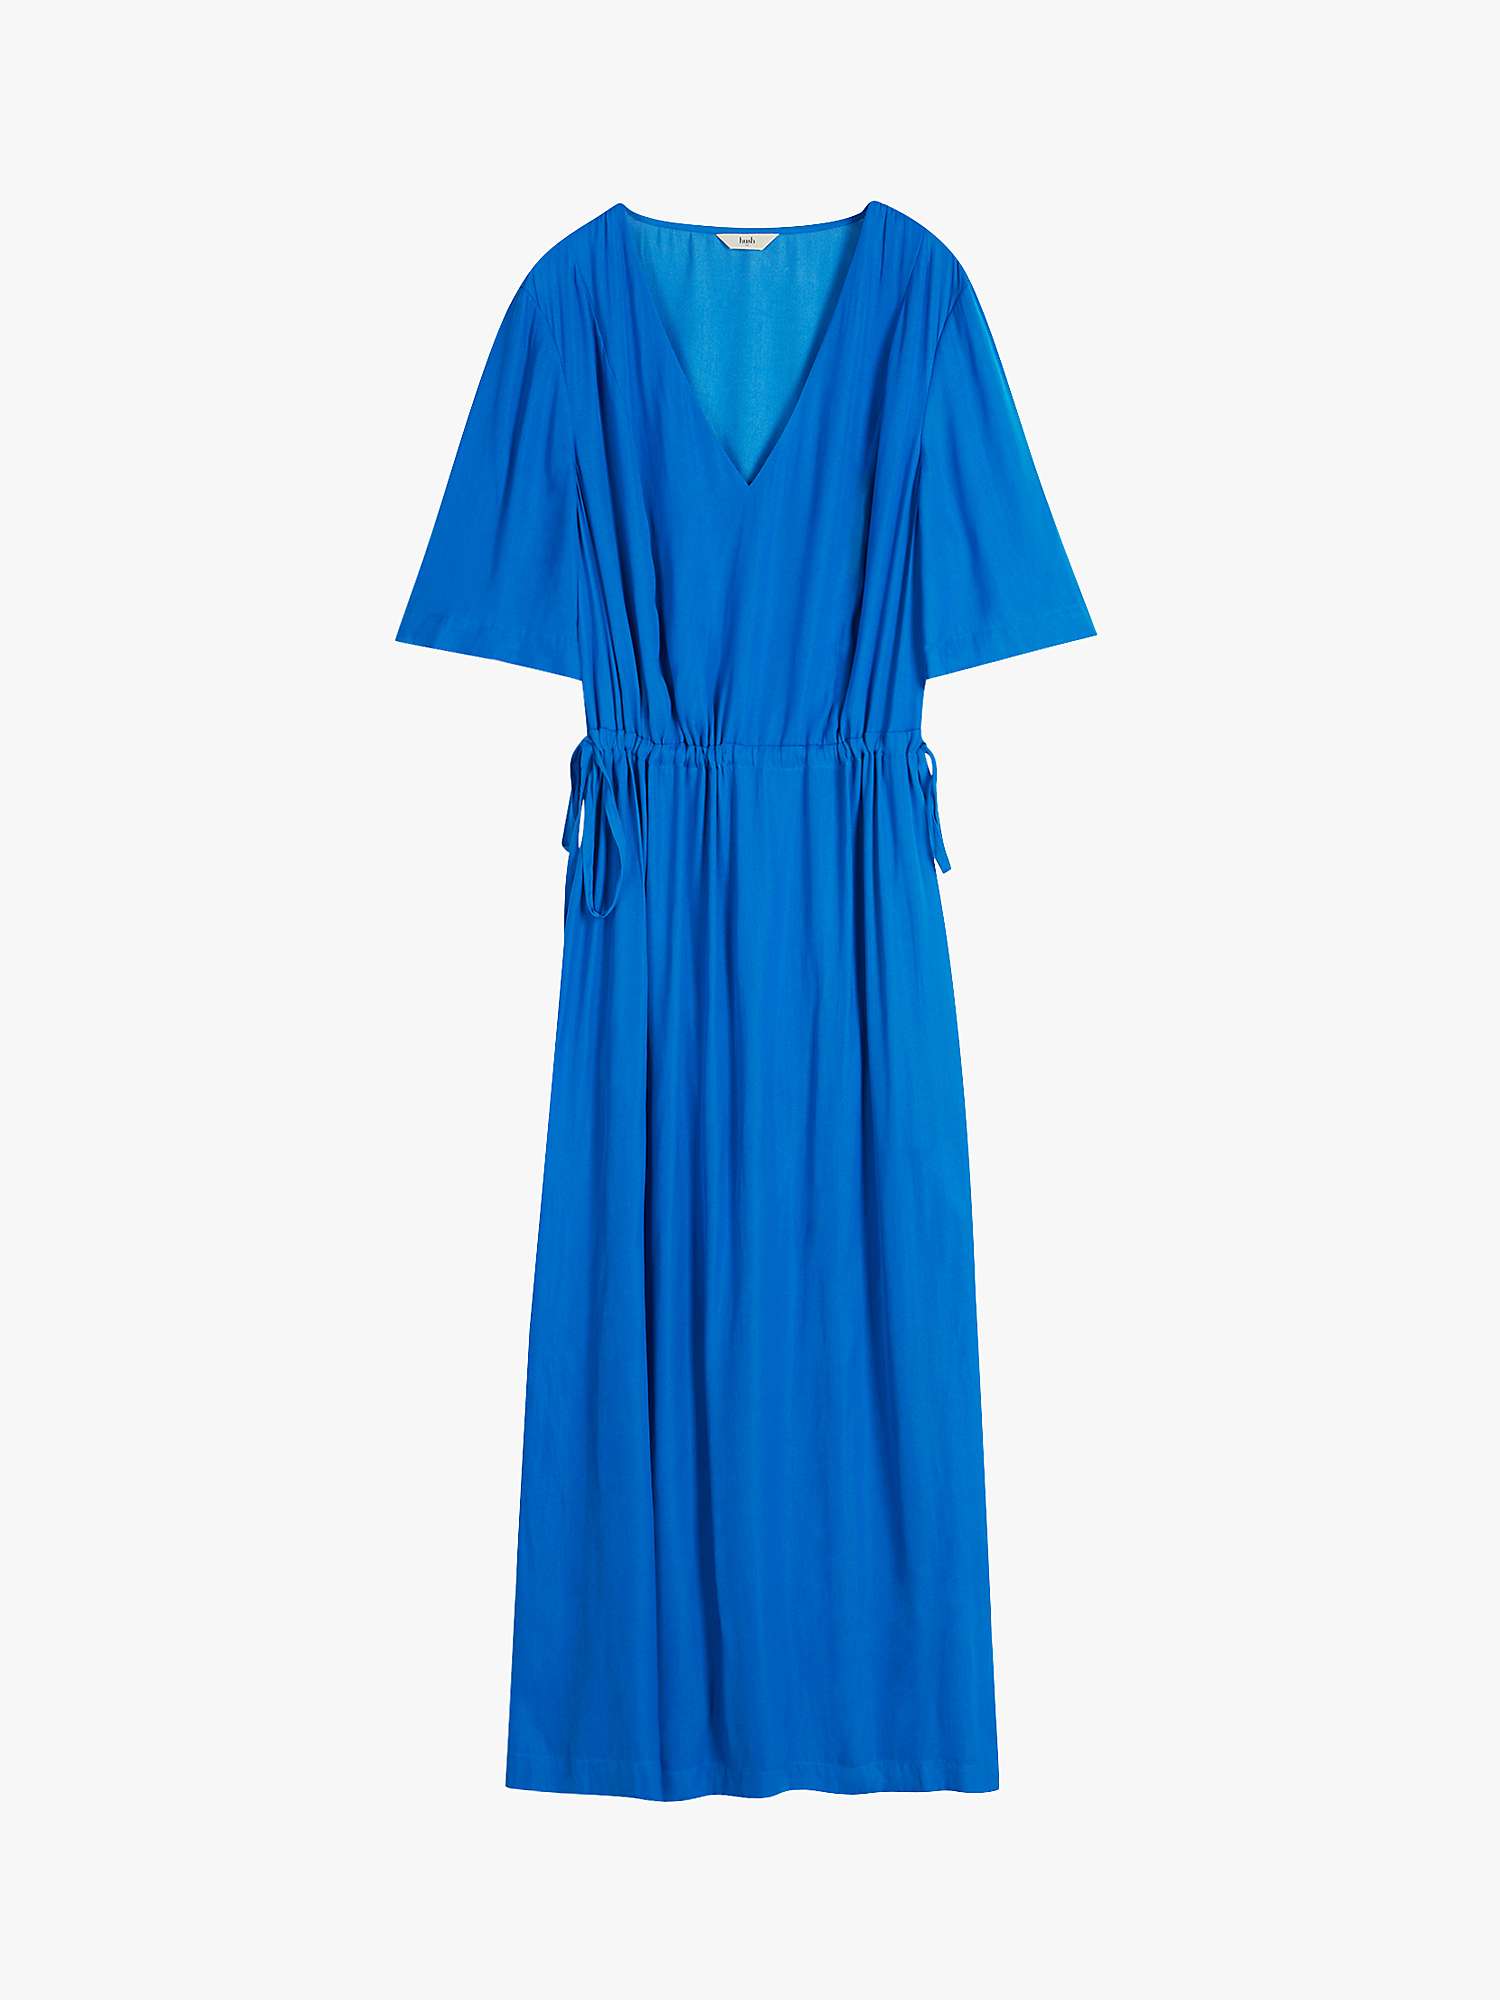 HUSH Grace Midi Dress, Vivid Blue at John Lewis & Partners